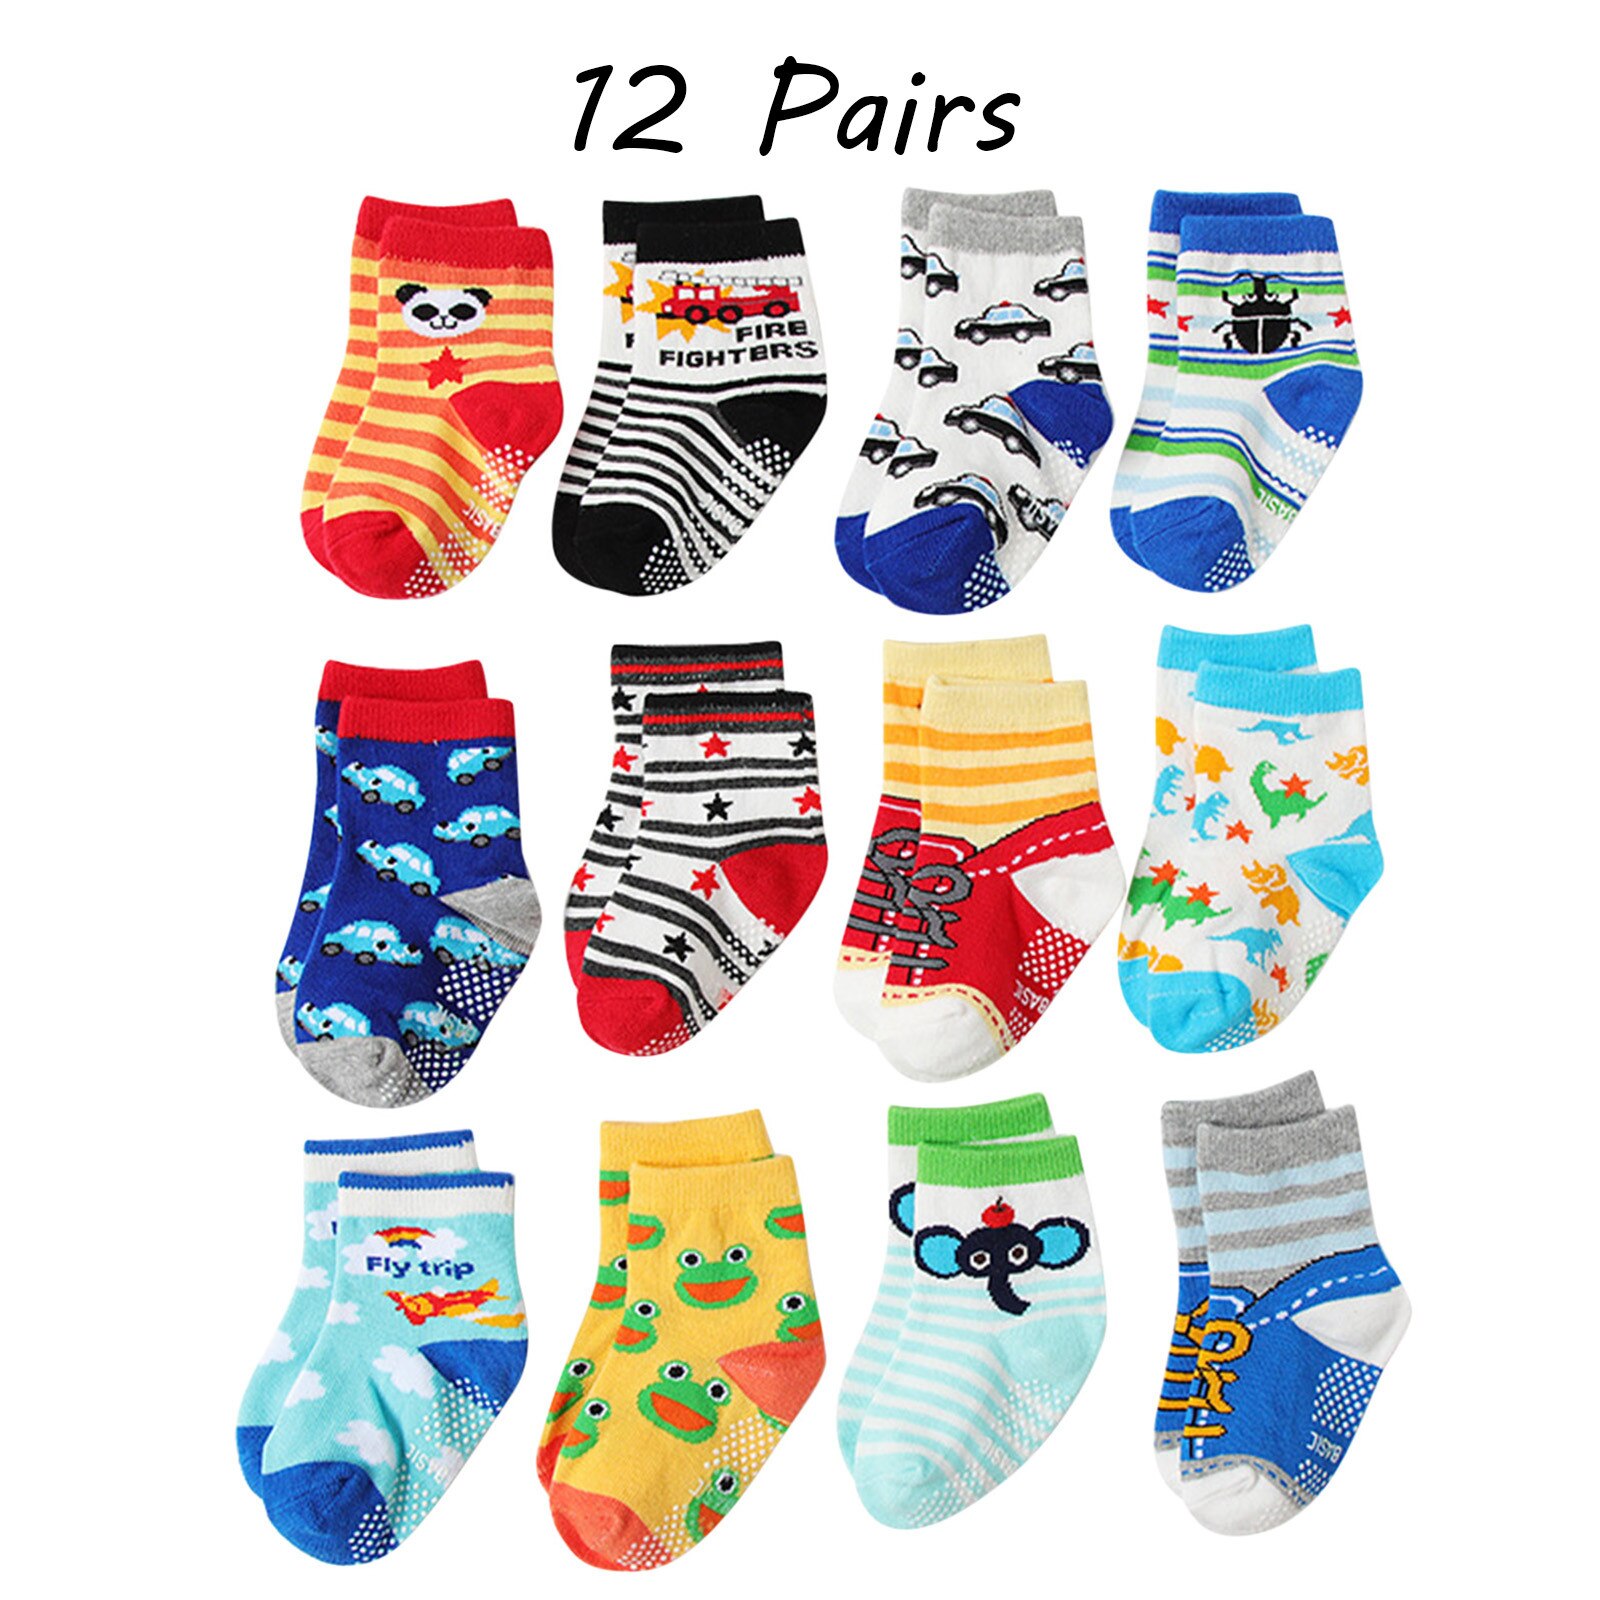 9 Toddler Socks 12 Pack Newborn Baby Infant Toddler UniSocks Baby Girl Boy Cartoon Prints Non Slip Floor Baby Girl Leg Socks